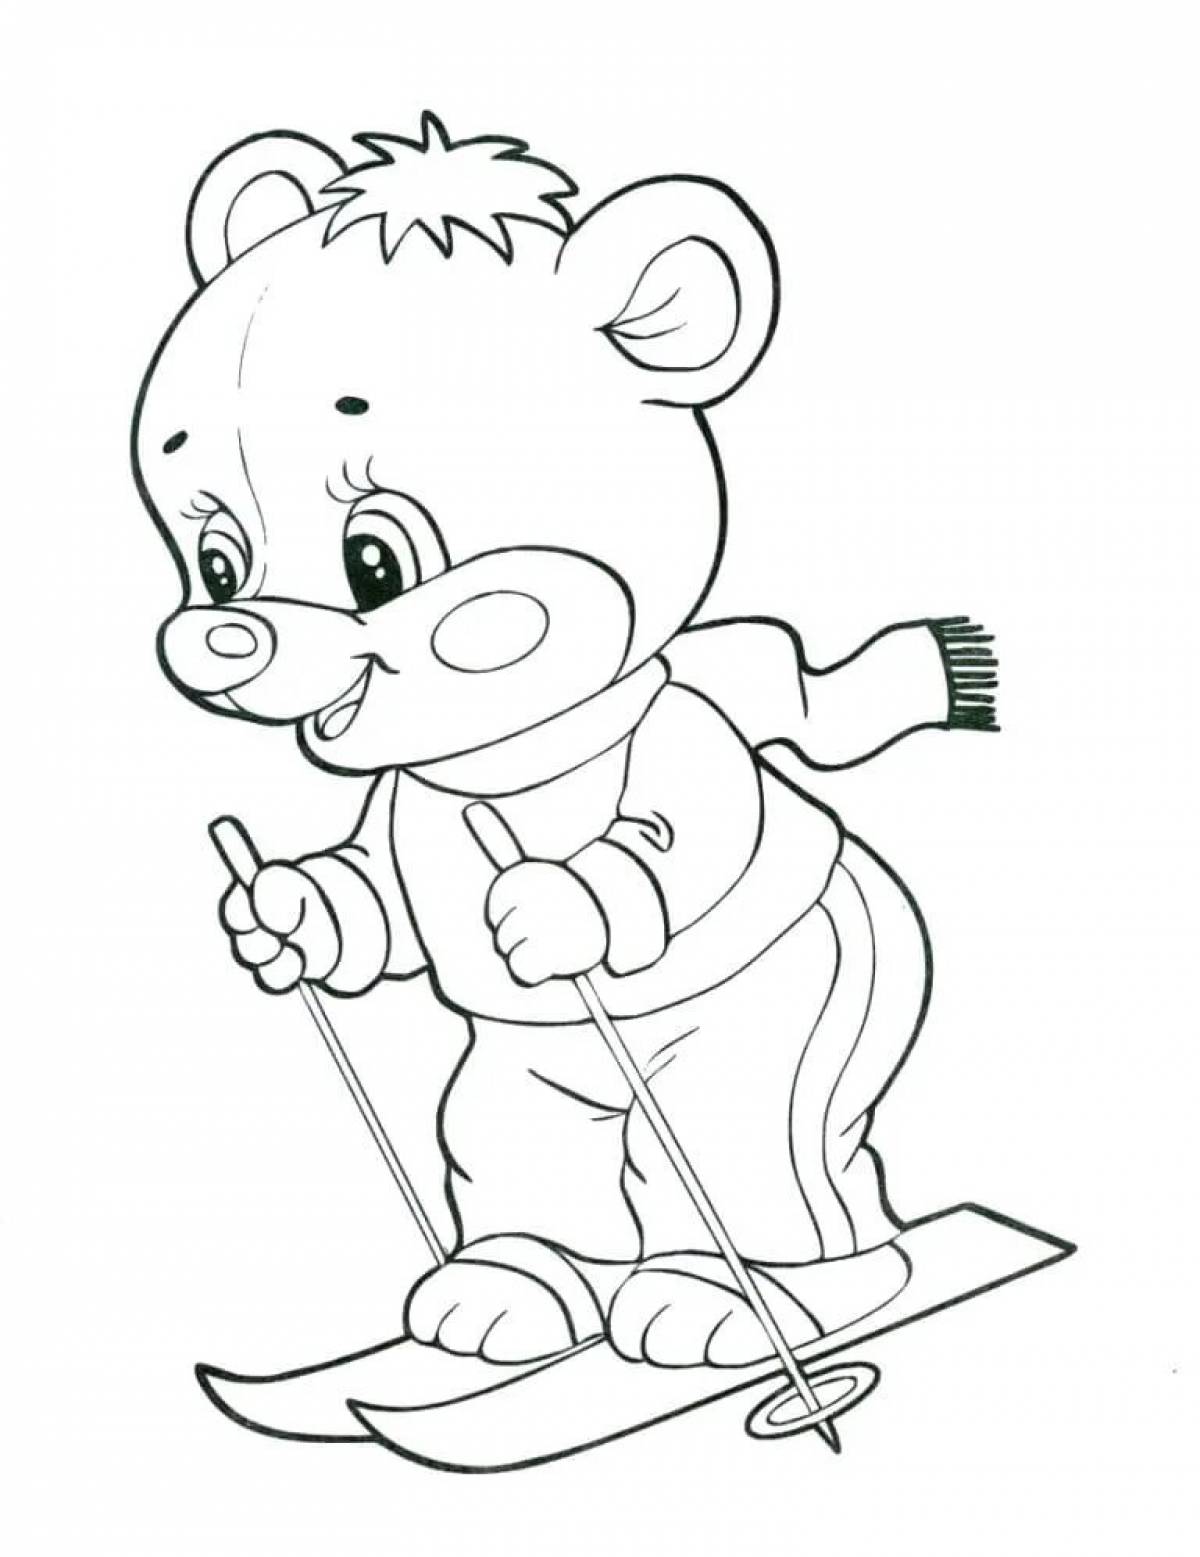 Раскрашивание средняя группа. Раскраска. Медвежонок. Раскраска "мишки". Раскраска. В детском саду. Картинки для раскрашивани.